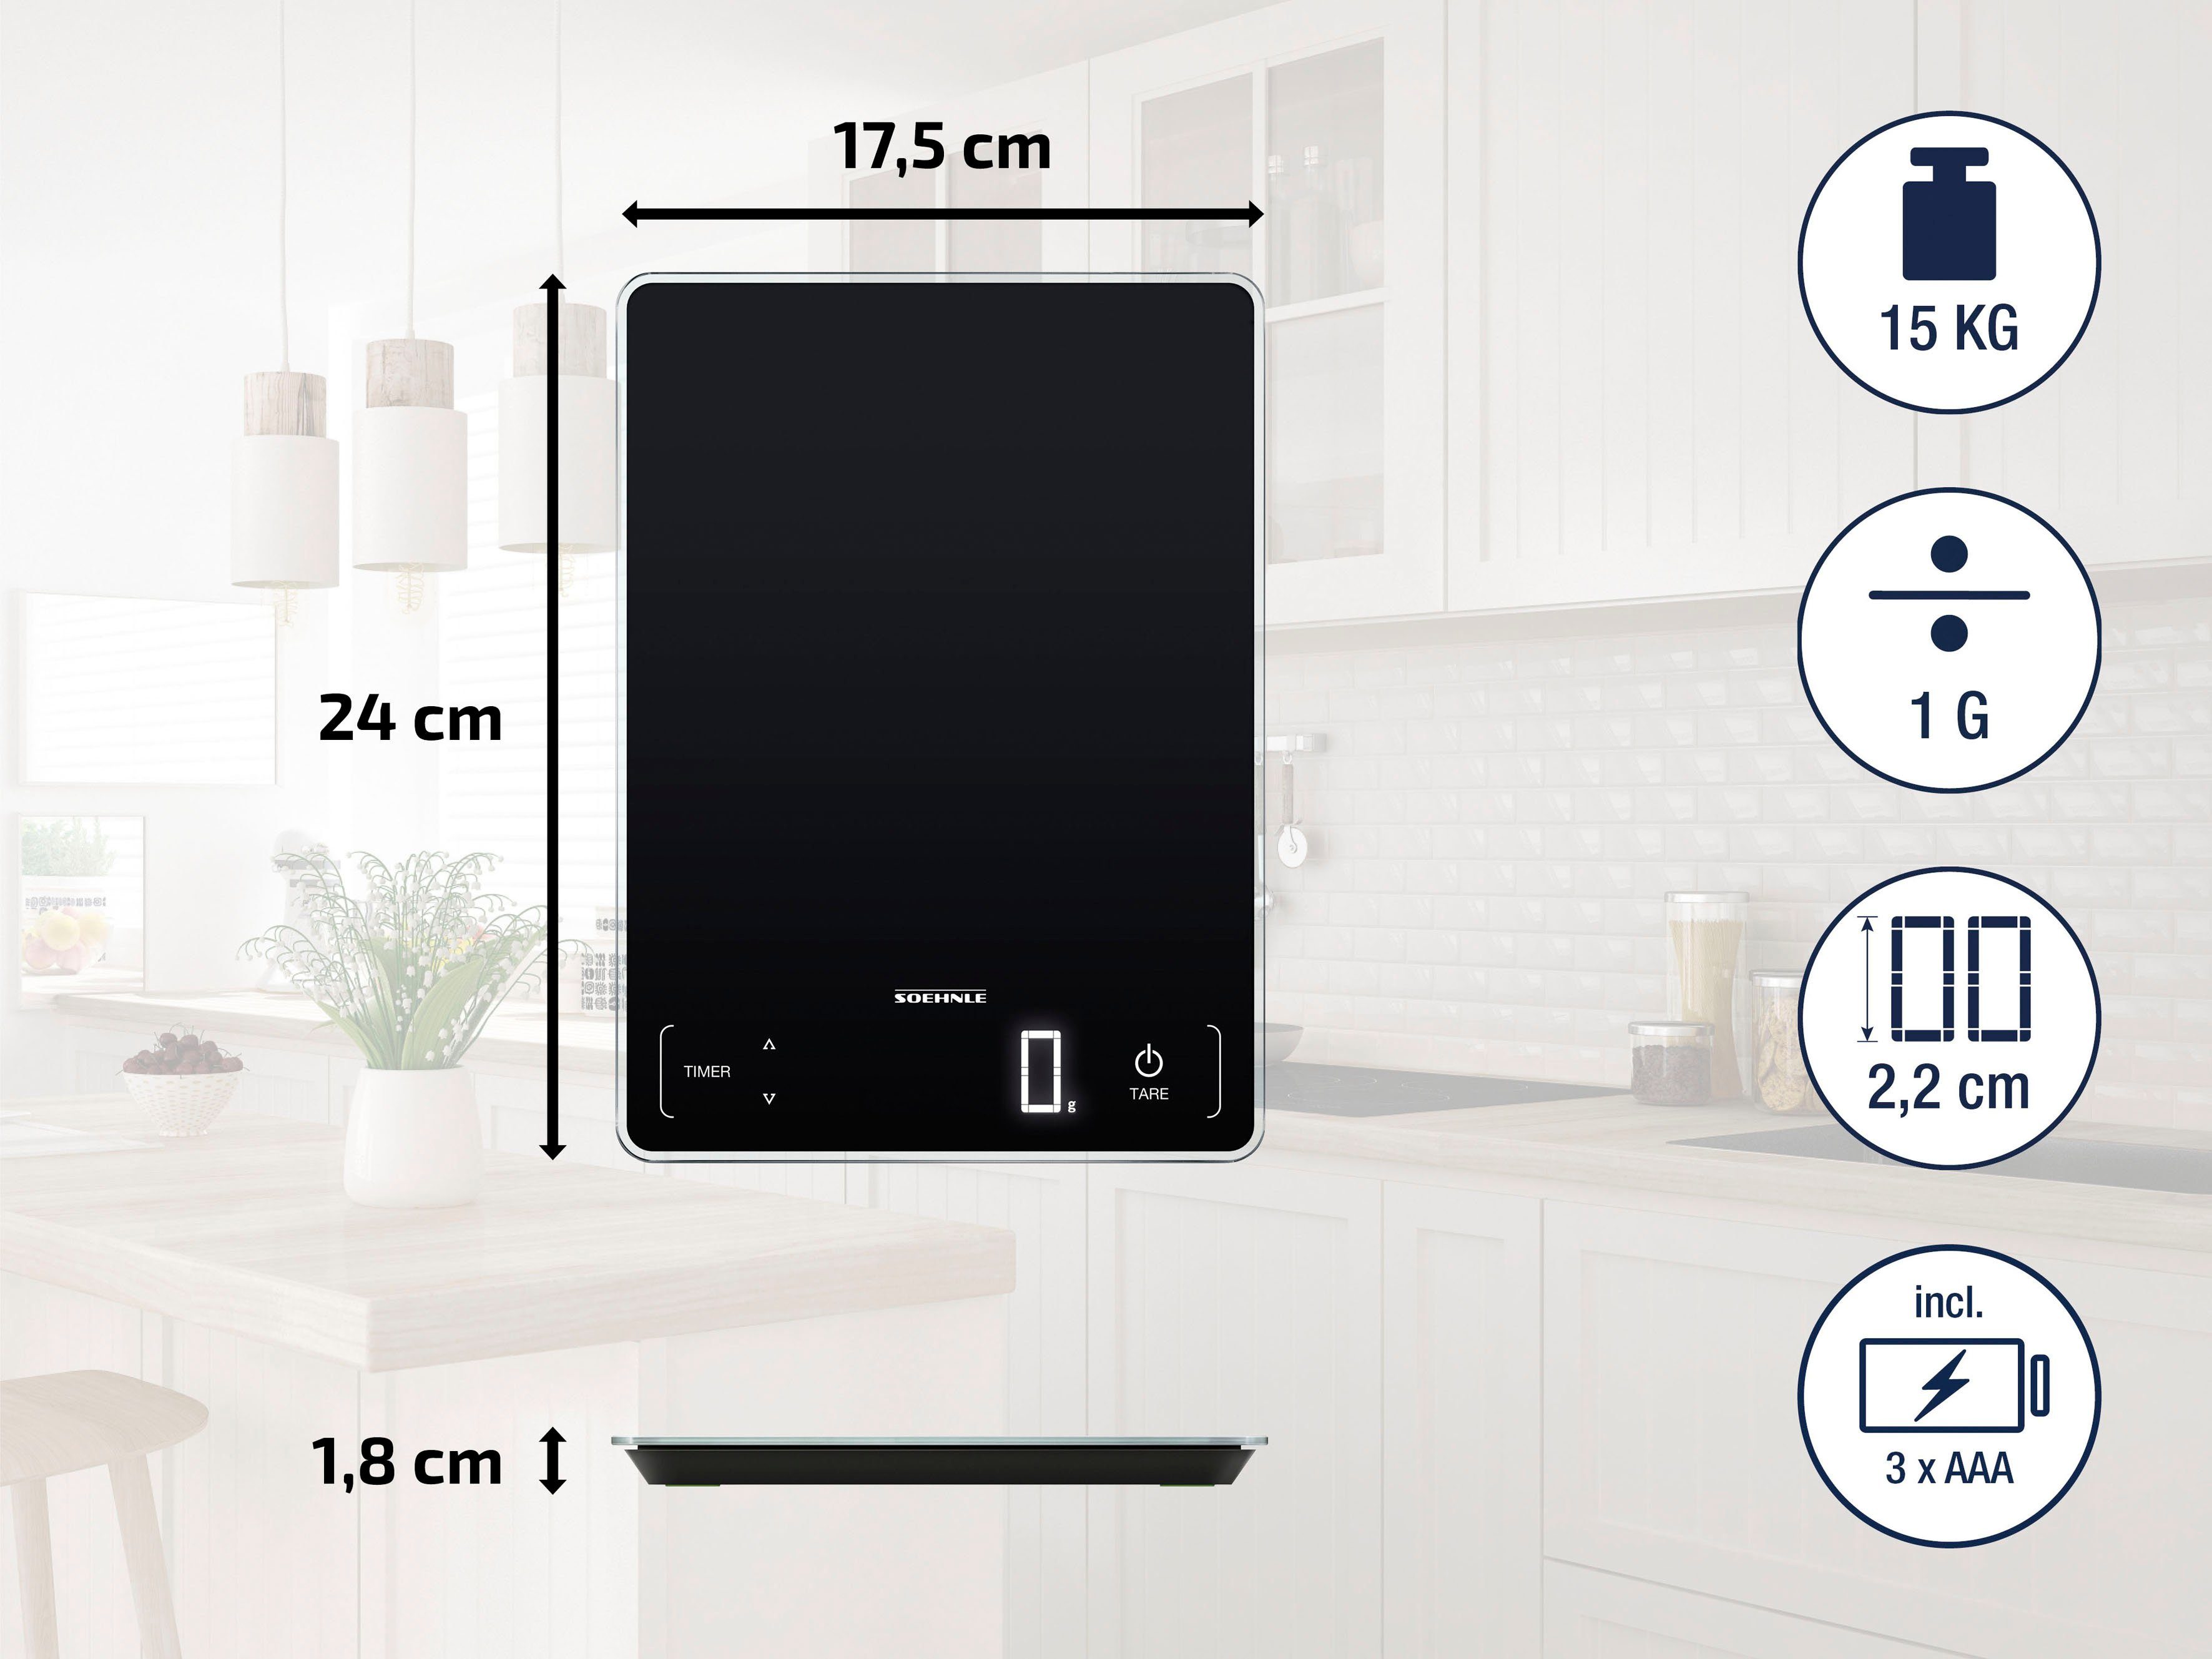 Küchenwaage 15 kg, zu 100, Page Tragkraft bis Soehnle Küchentimer, &Sensor-Touch Teilung + 1g Profi genaue